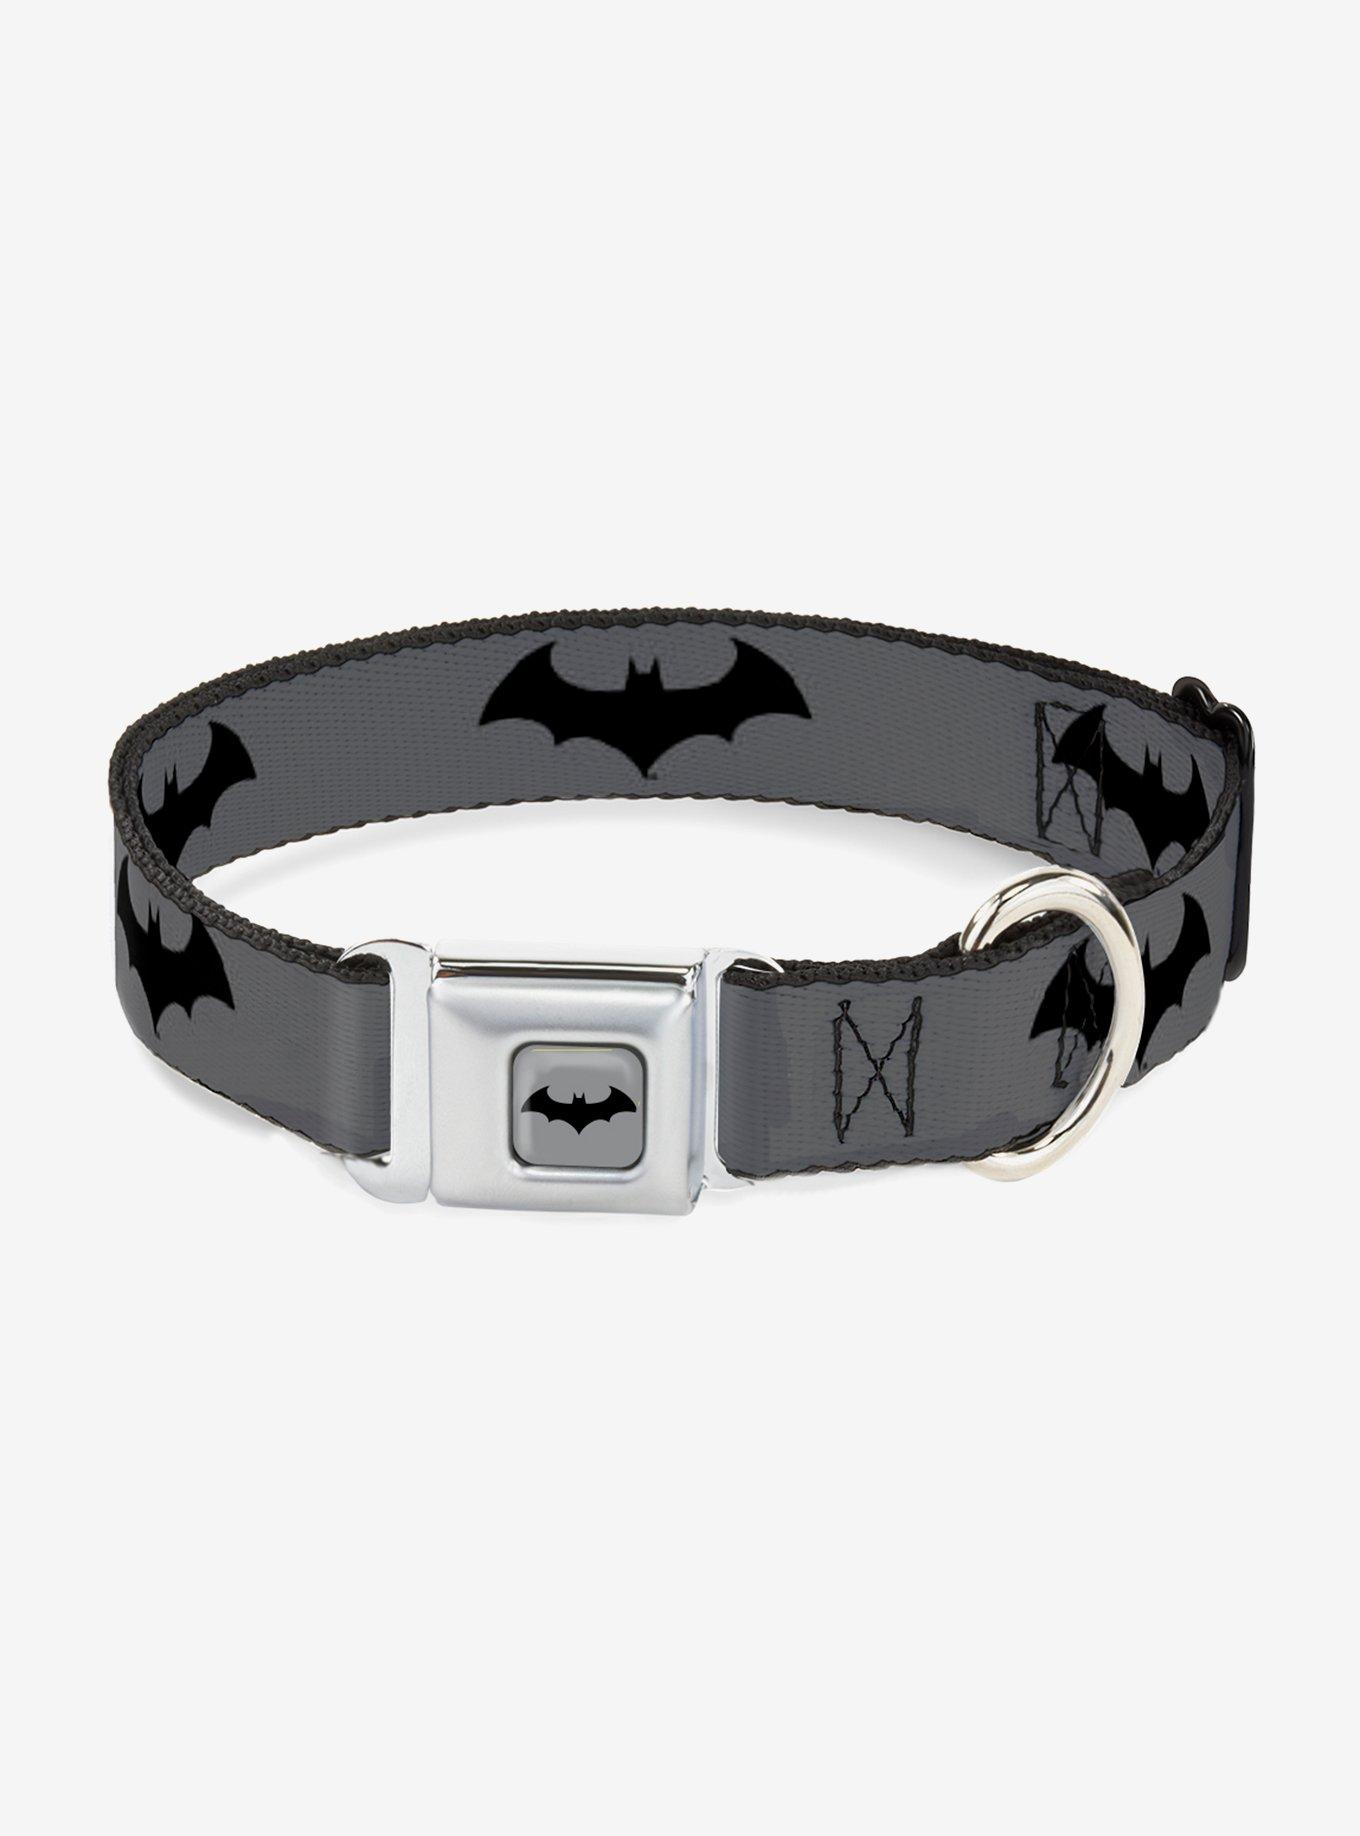 DC Comics Justice League Retro Bat Logo Gray Black Seatbelt Buckle Pet Collar, GREY, hi-res